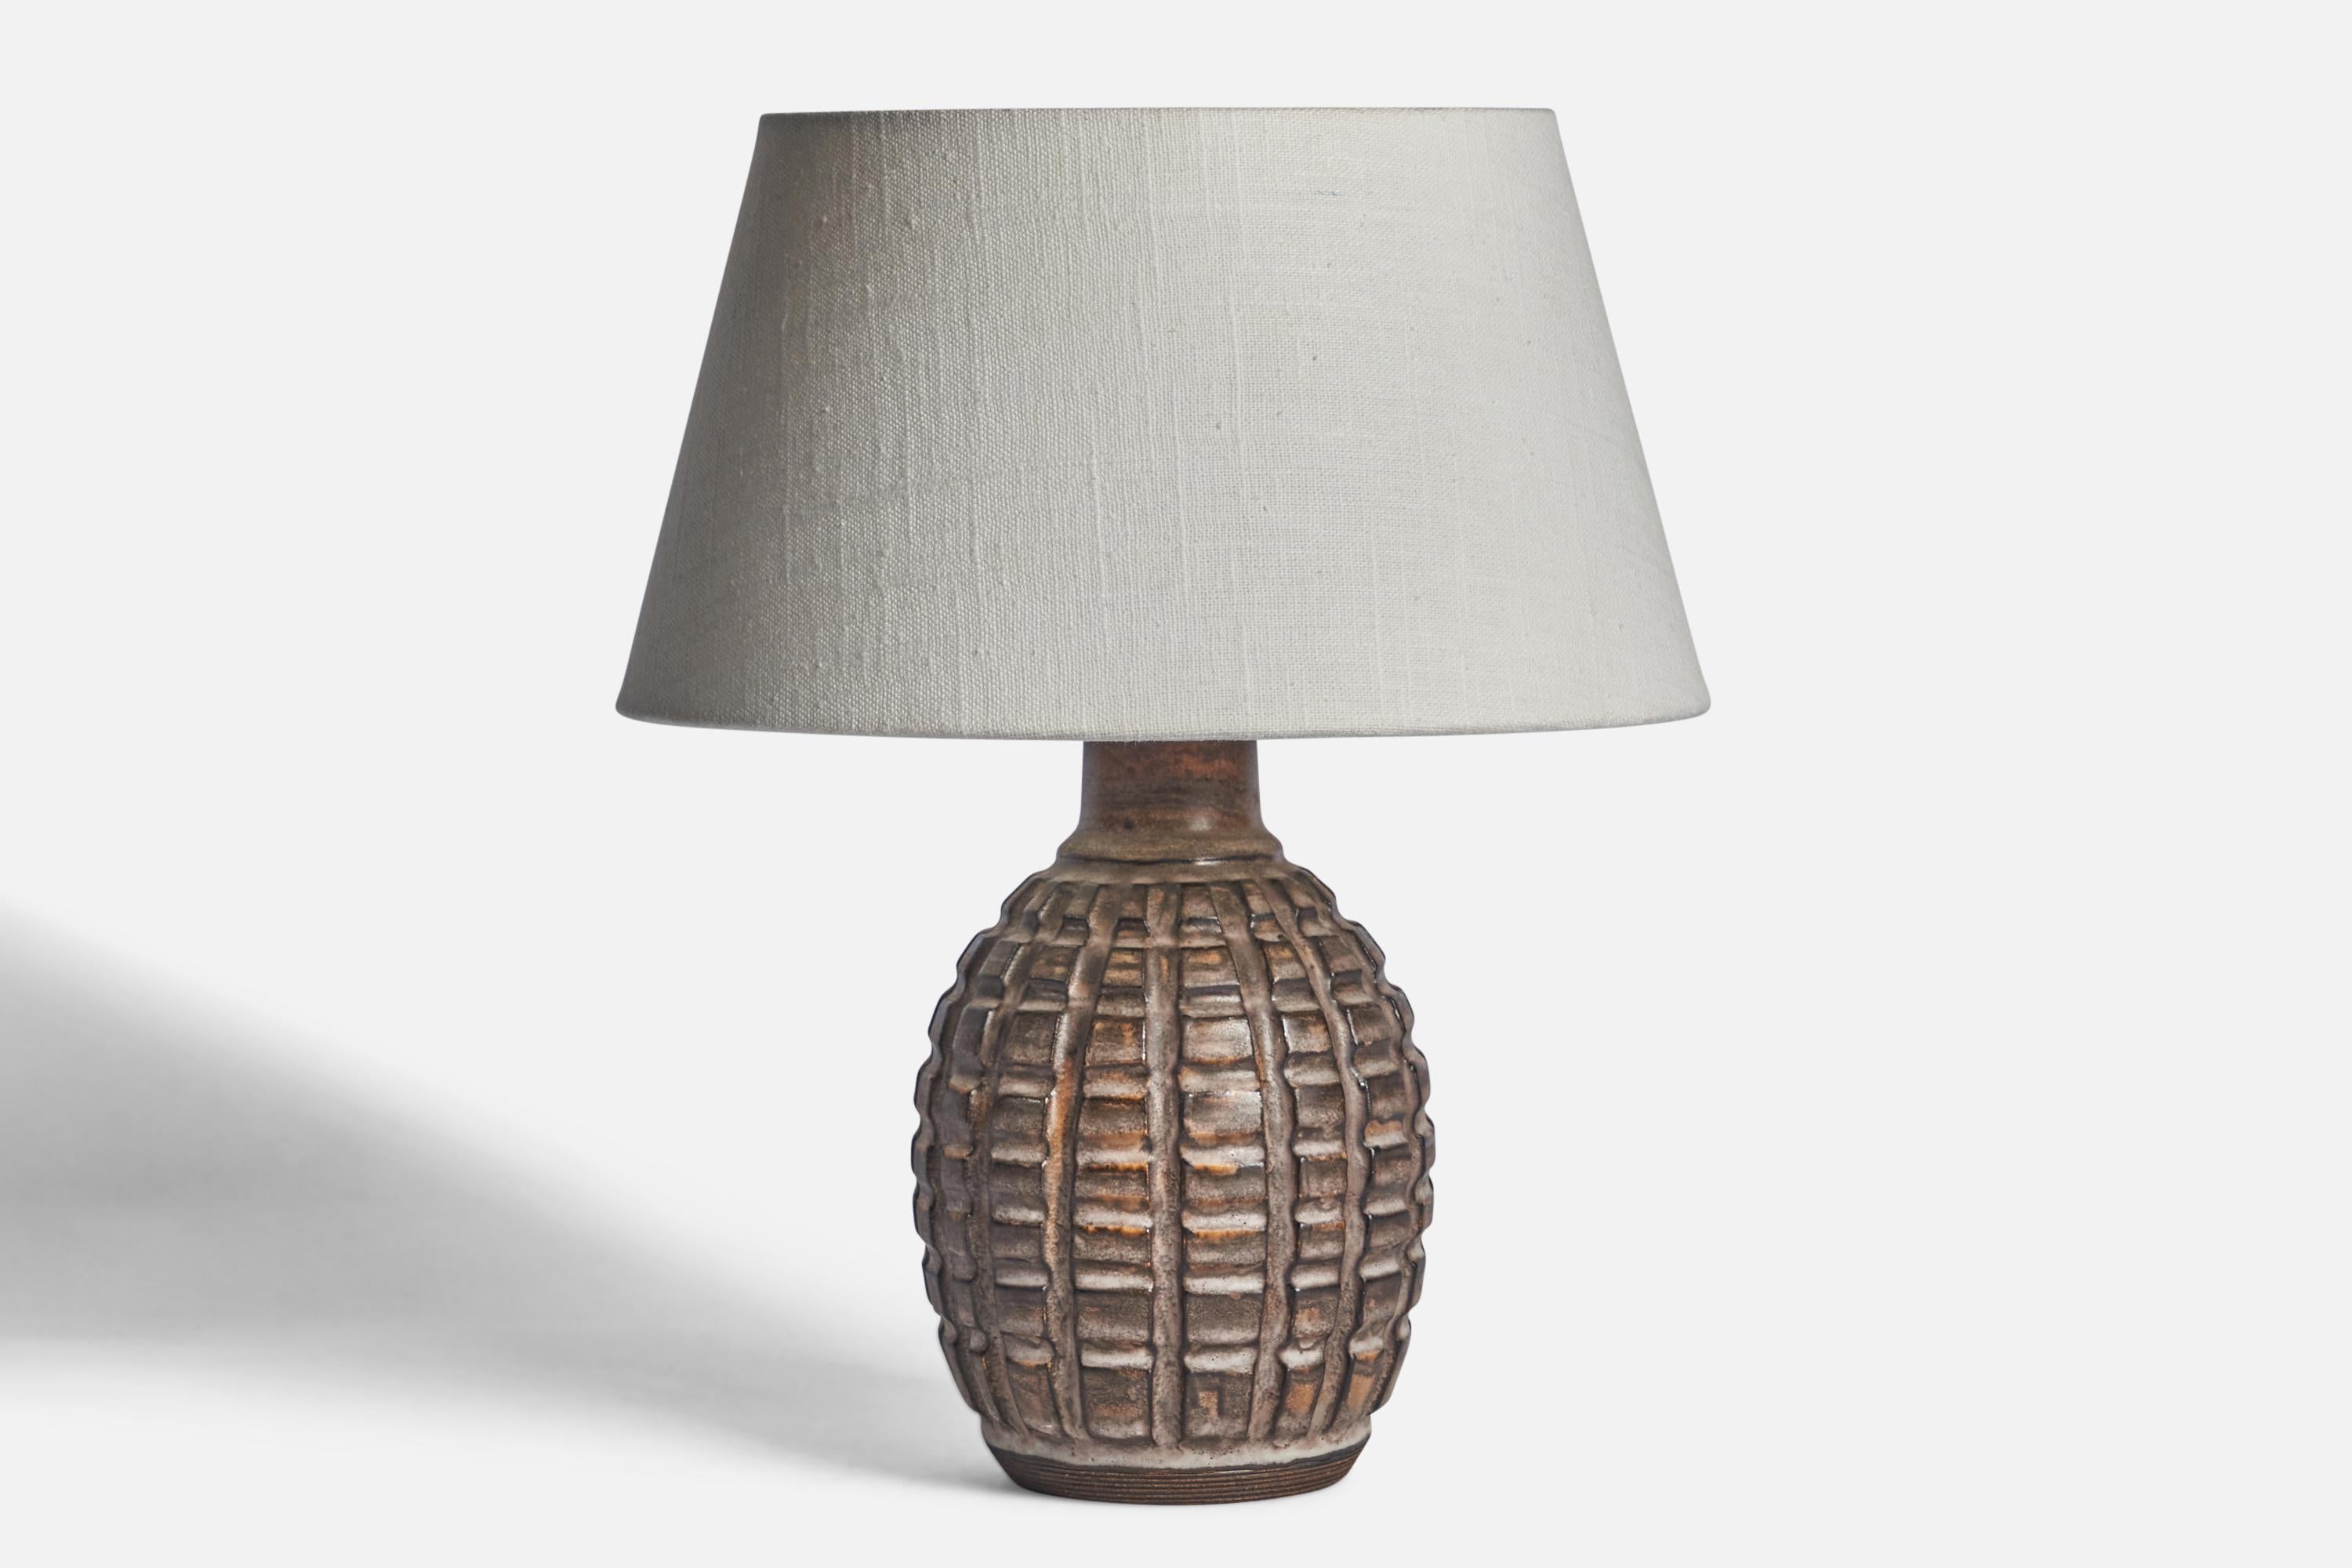 Lampe de table en grès émaillé brun, conçue et produite par Irma Yourstone, Suède, c. 1960.

Dimensions de la lampe (pouces) : 9.85